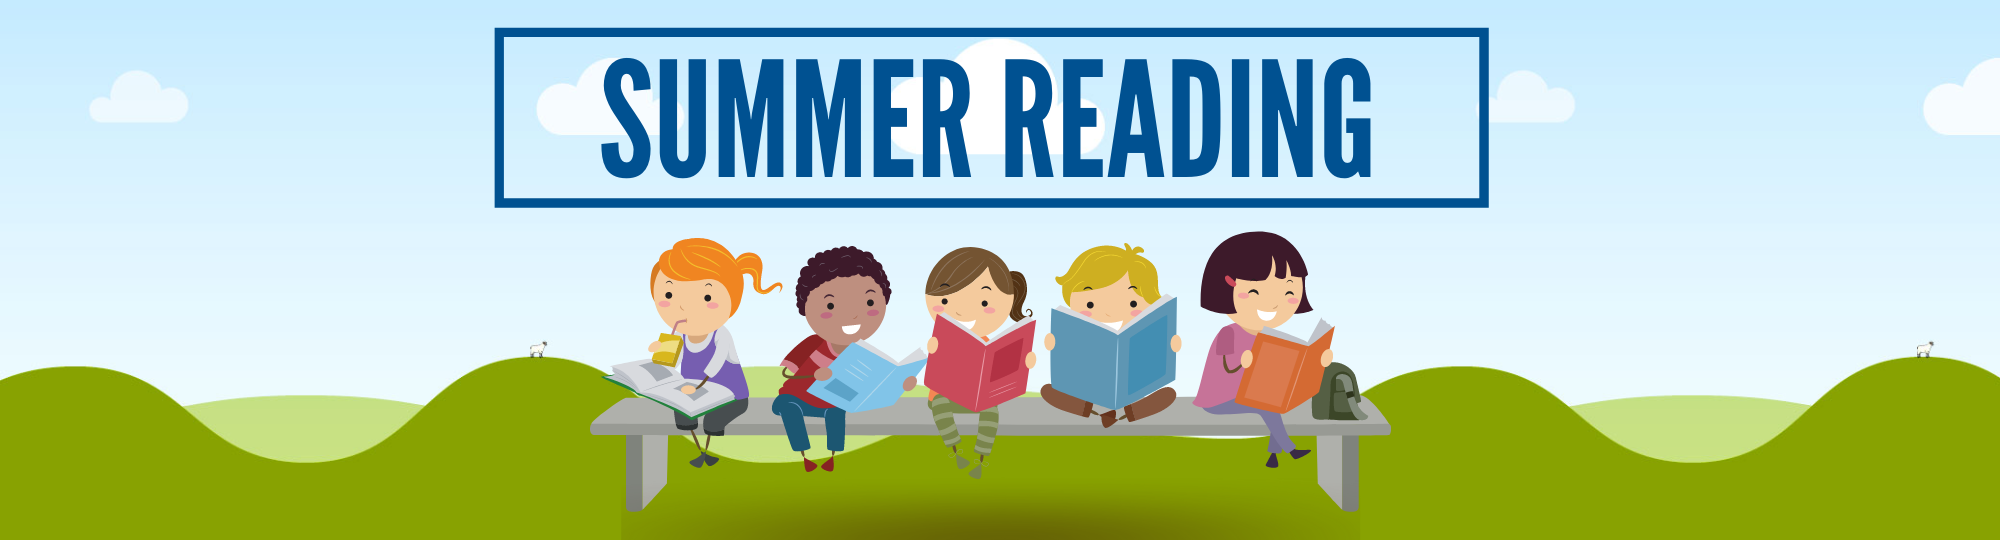 Summer Reading News Header